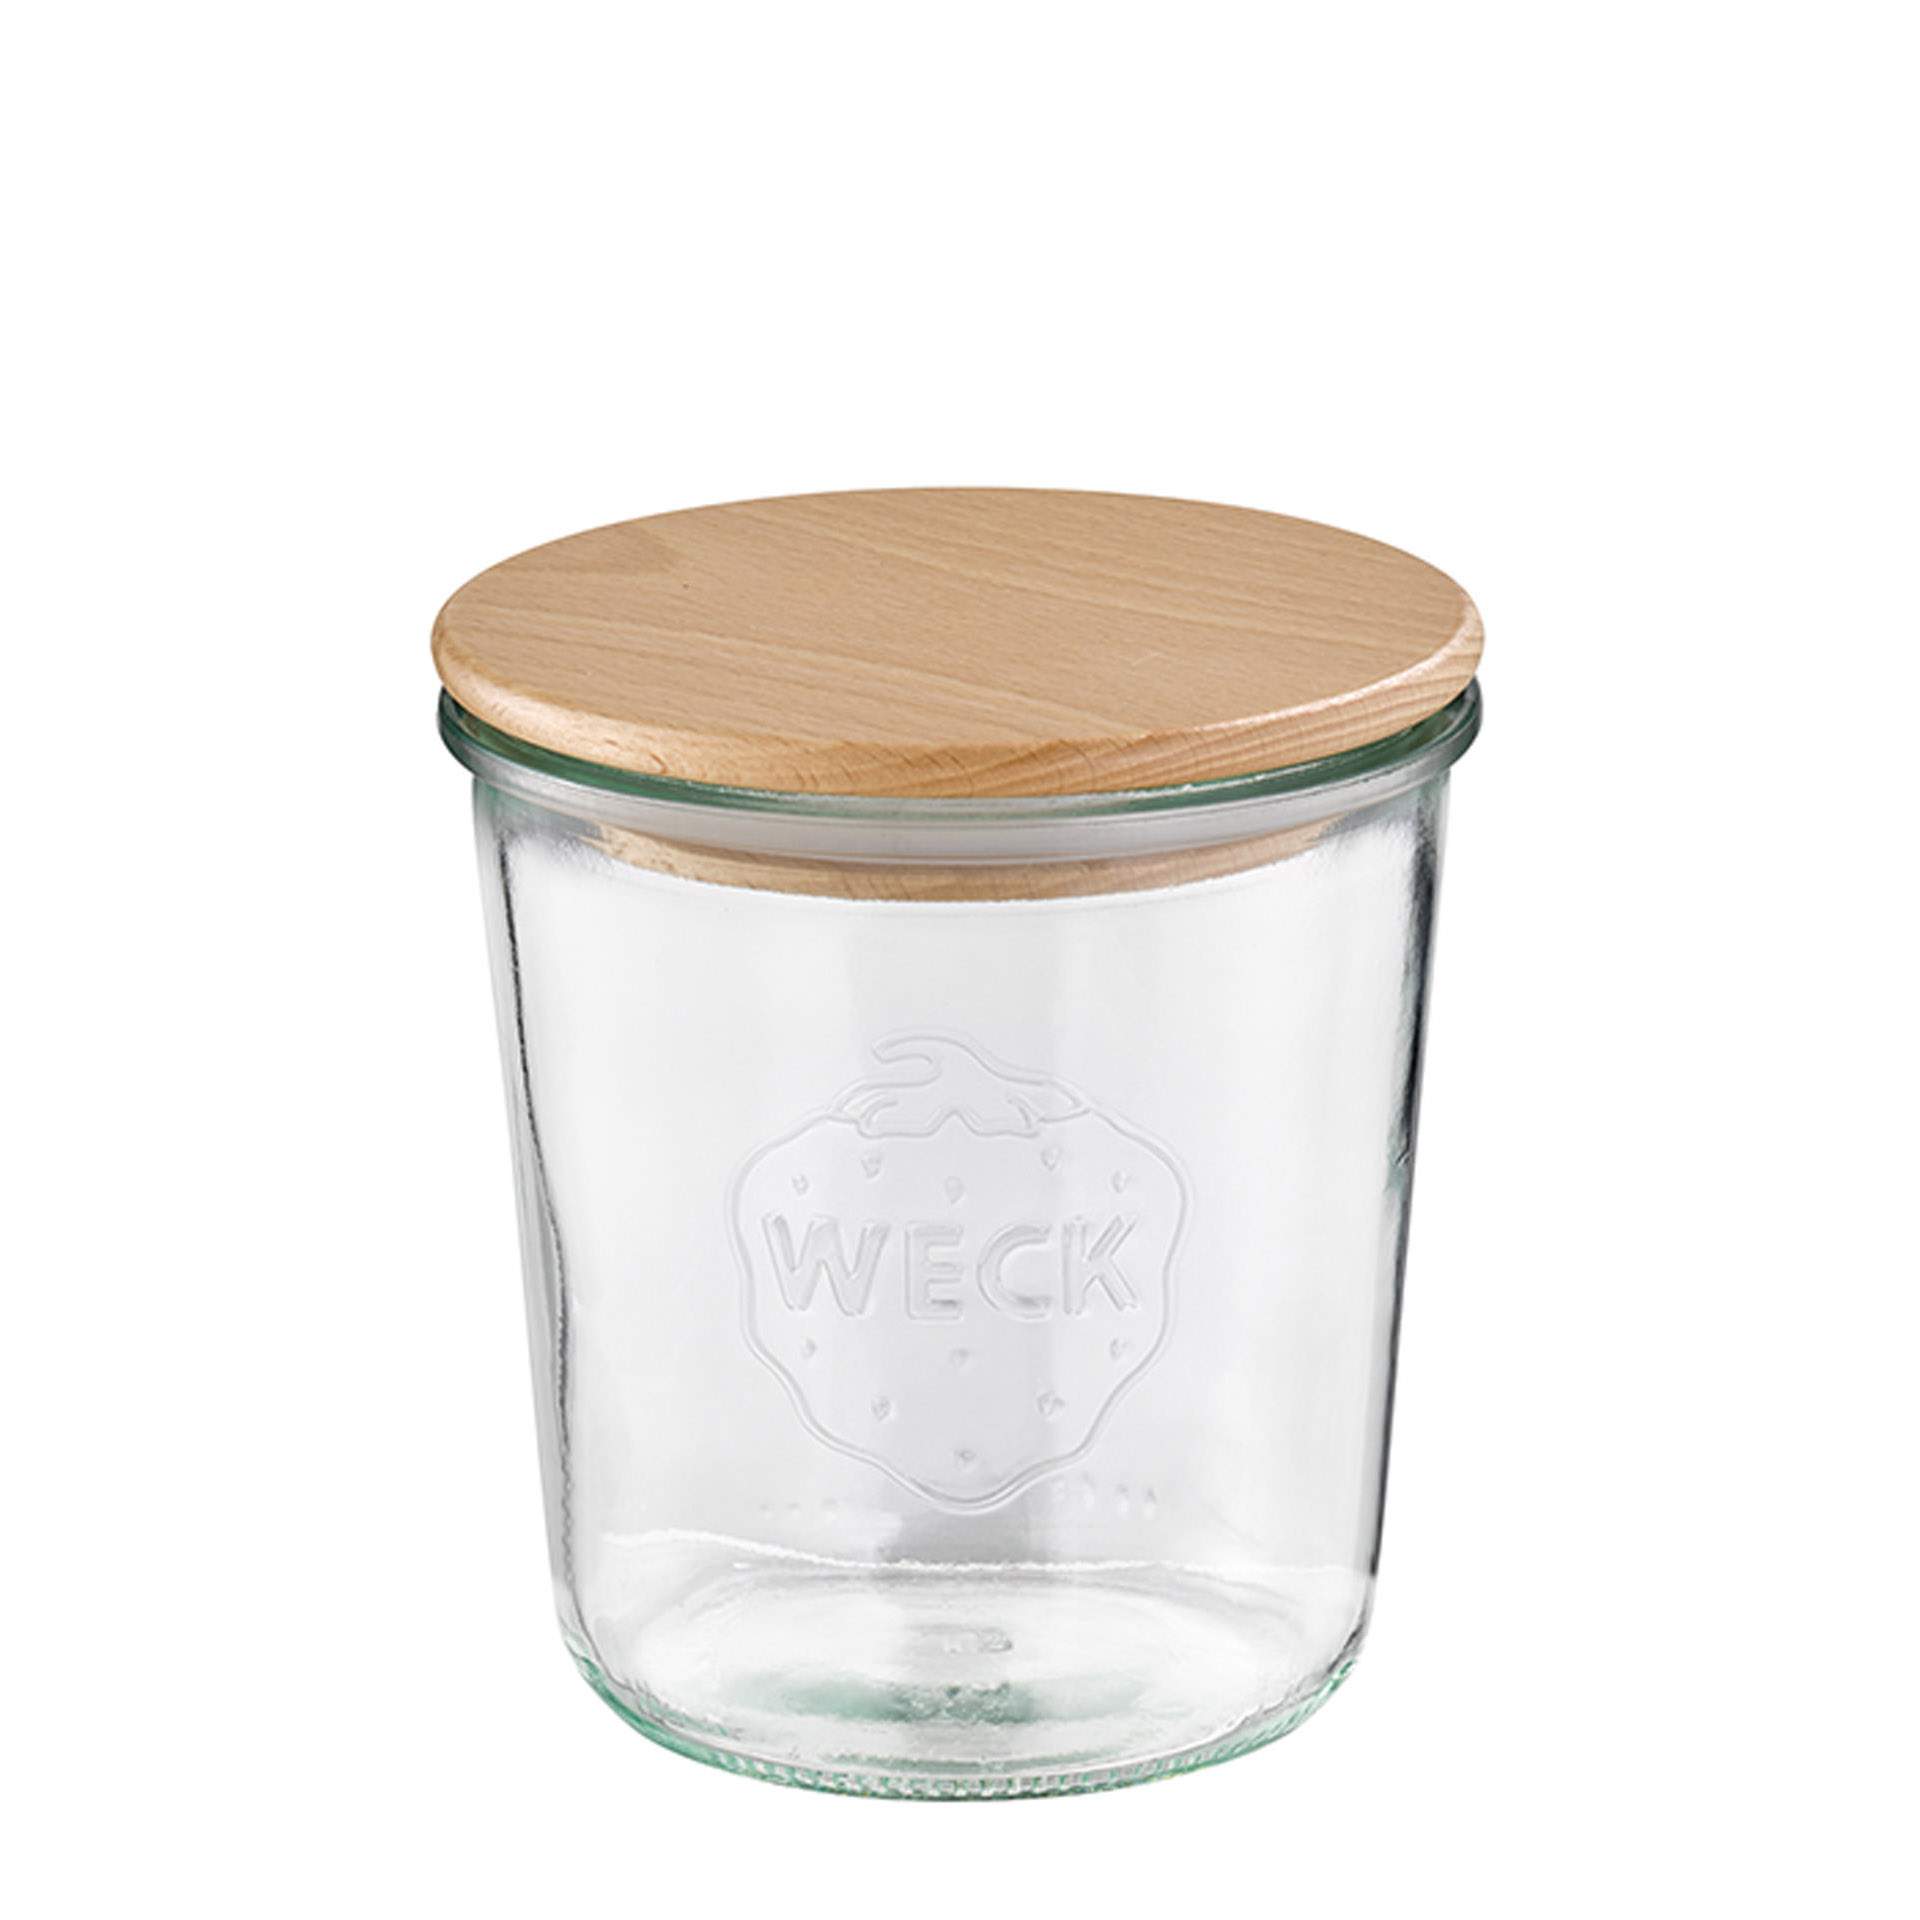 Weck-Glas - mit Deckel - Höhe 11 cm - Ø 11 cm - Inhalt 0,58 l - Glas - 82244-B